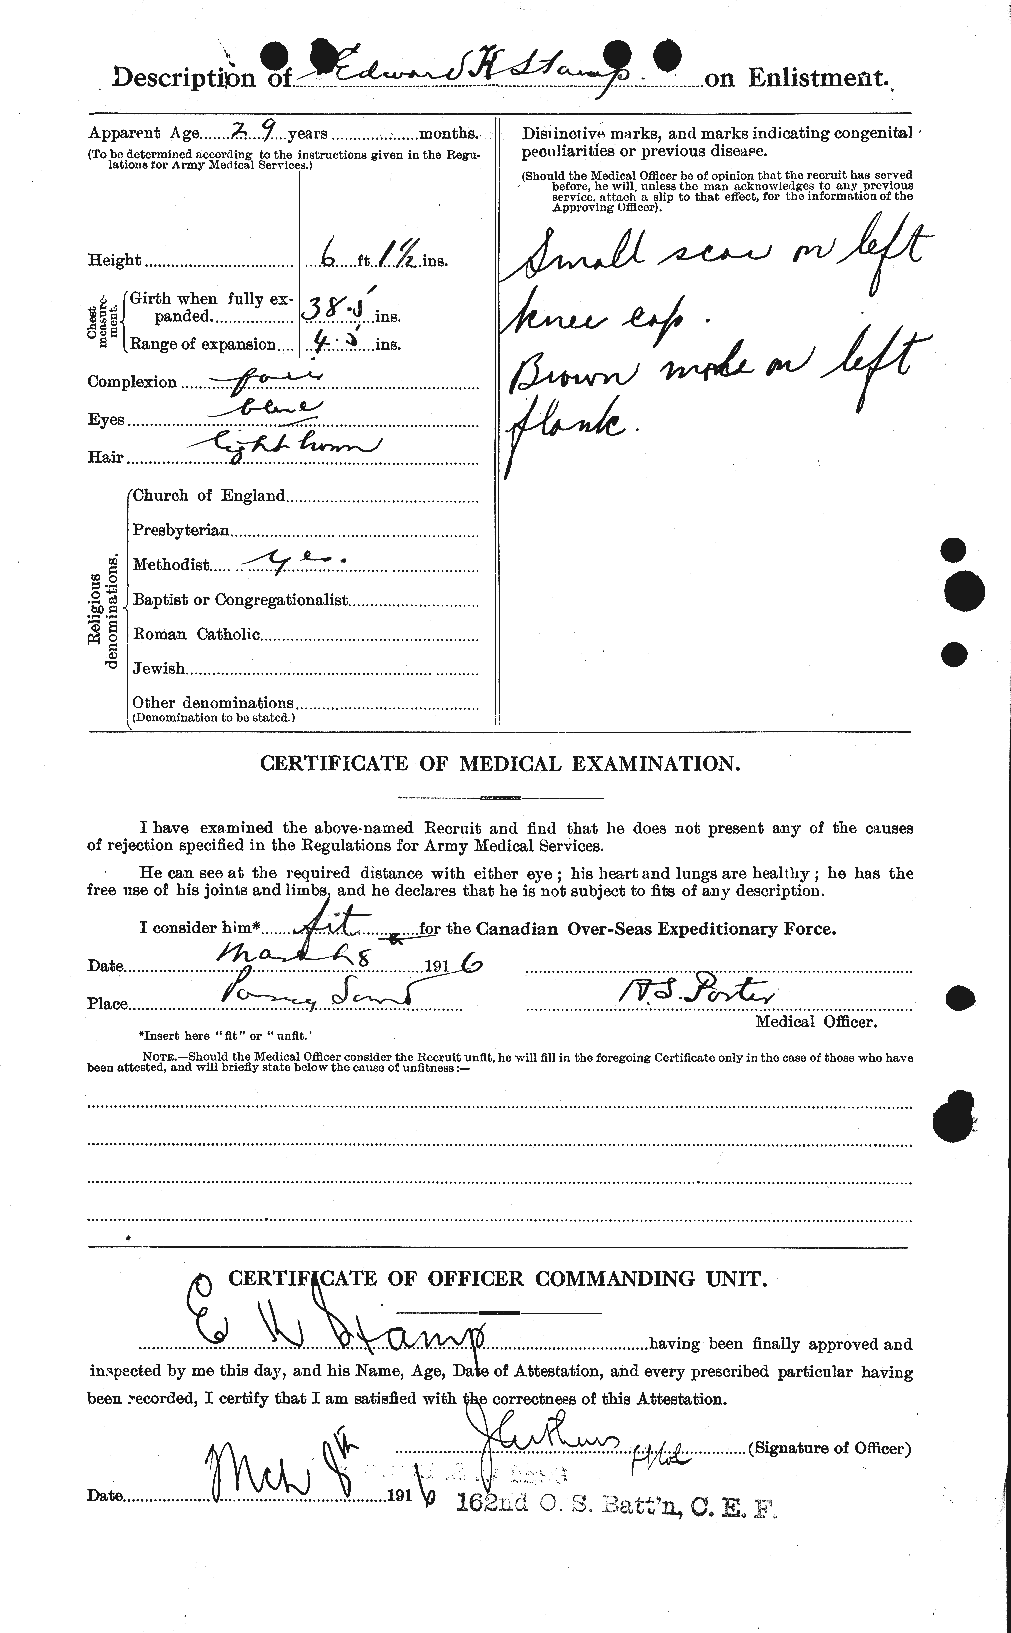 Dossiers du Personnel de la Première Guerre mondiale - CEC 116482b